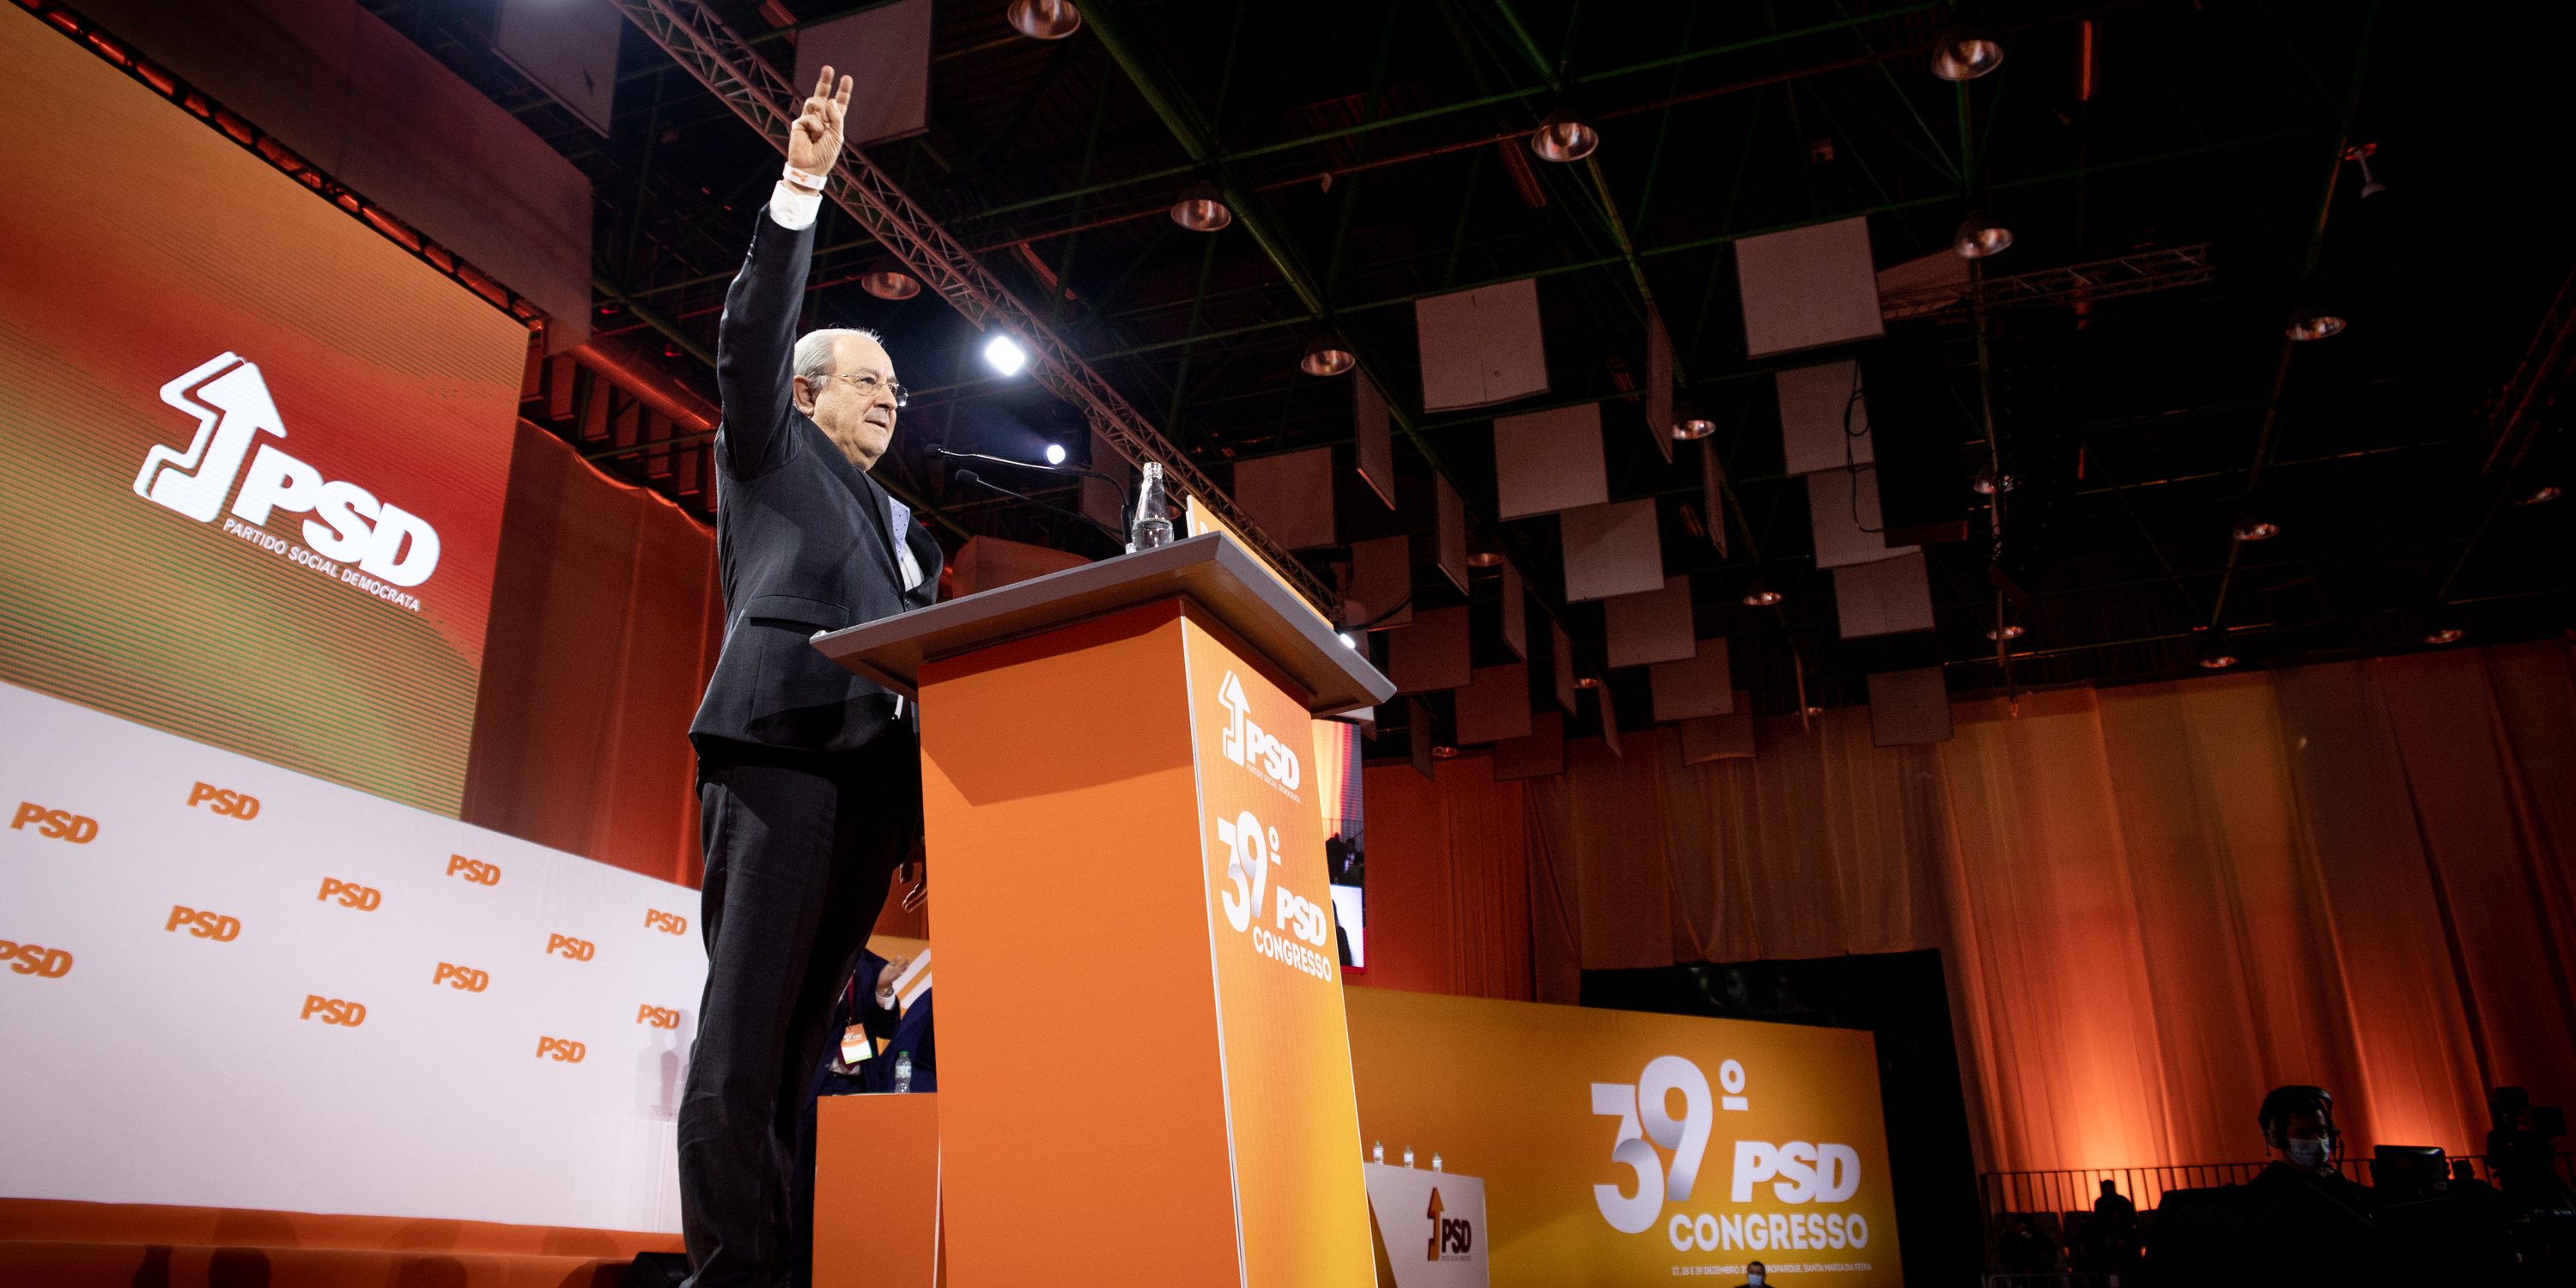 39º Congresso PSD (Partido Social Democrata) - Discurso de abertura de Rui Rio, presidente do partido, no primeiro dia de congresso. Santa Maria da Feira, Aveiro 17 de Dezembro de 2021 TOMÁS SILVA/OBSERVADOR